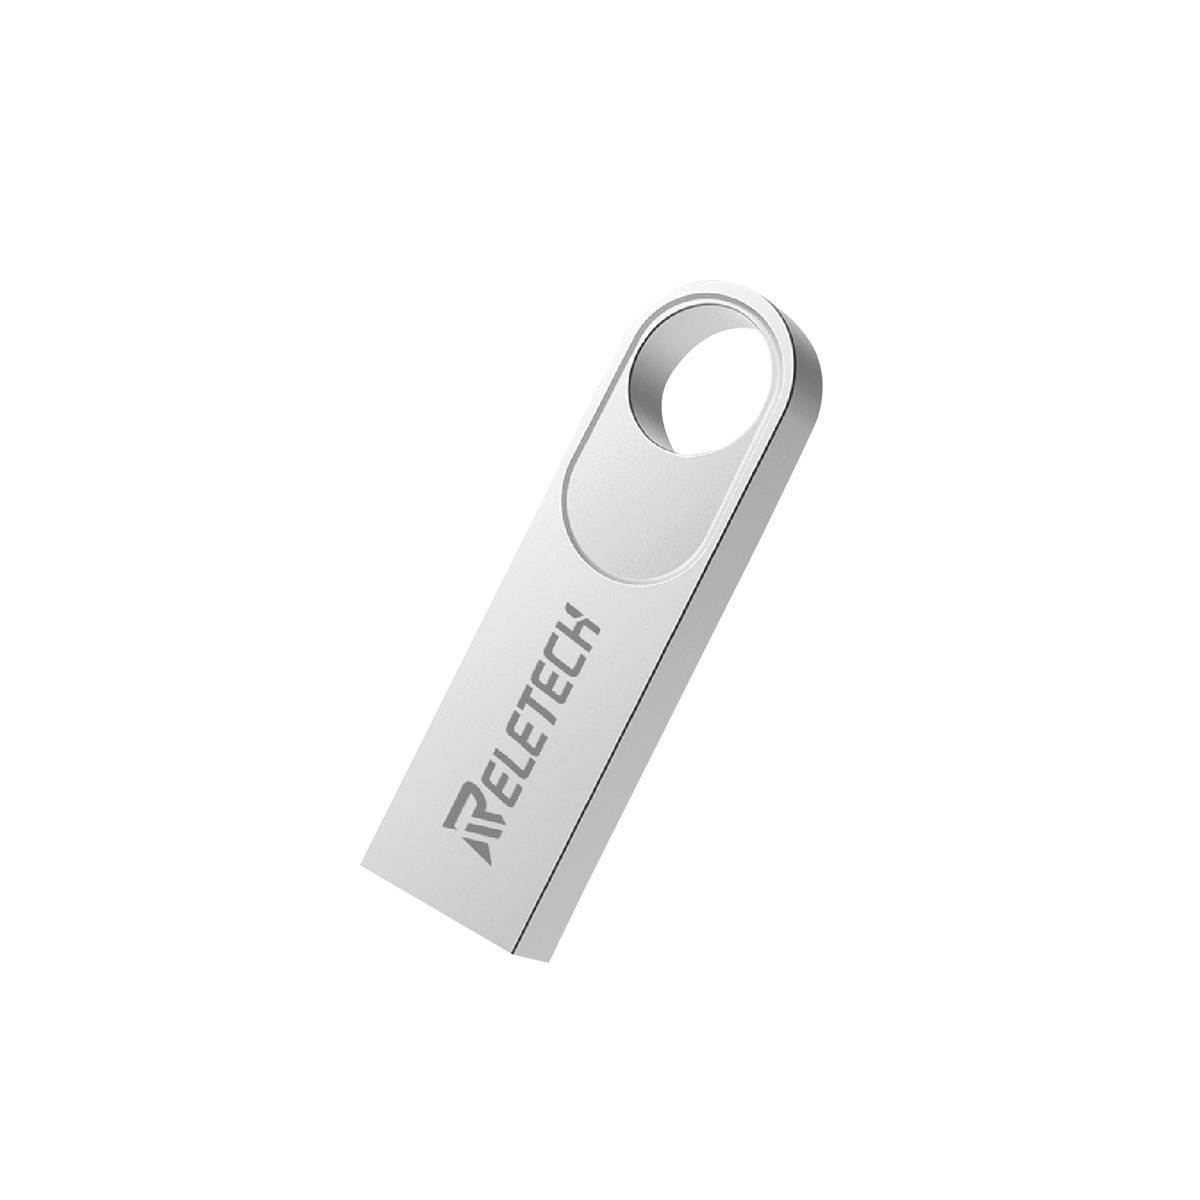 Фото — Внешний накопитель Reletech USB FLASH DRIVE T5 16Gb 2.0, серый